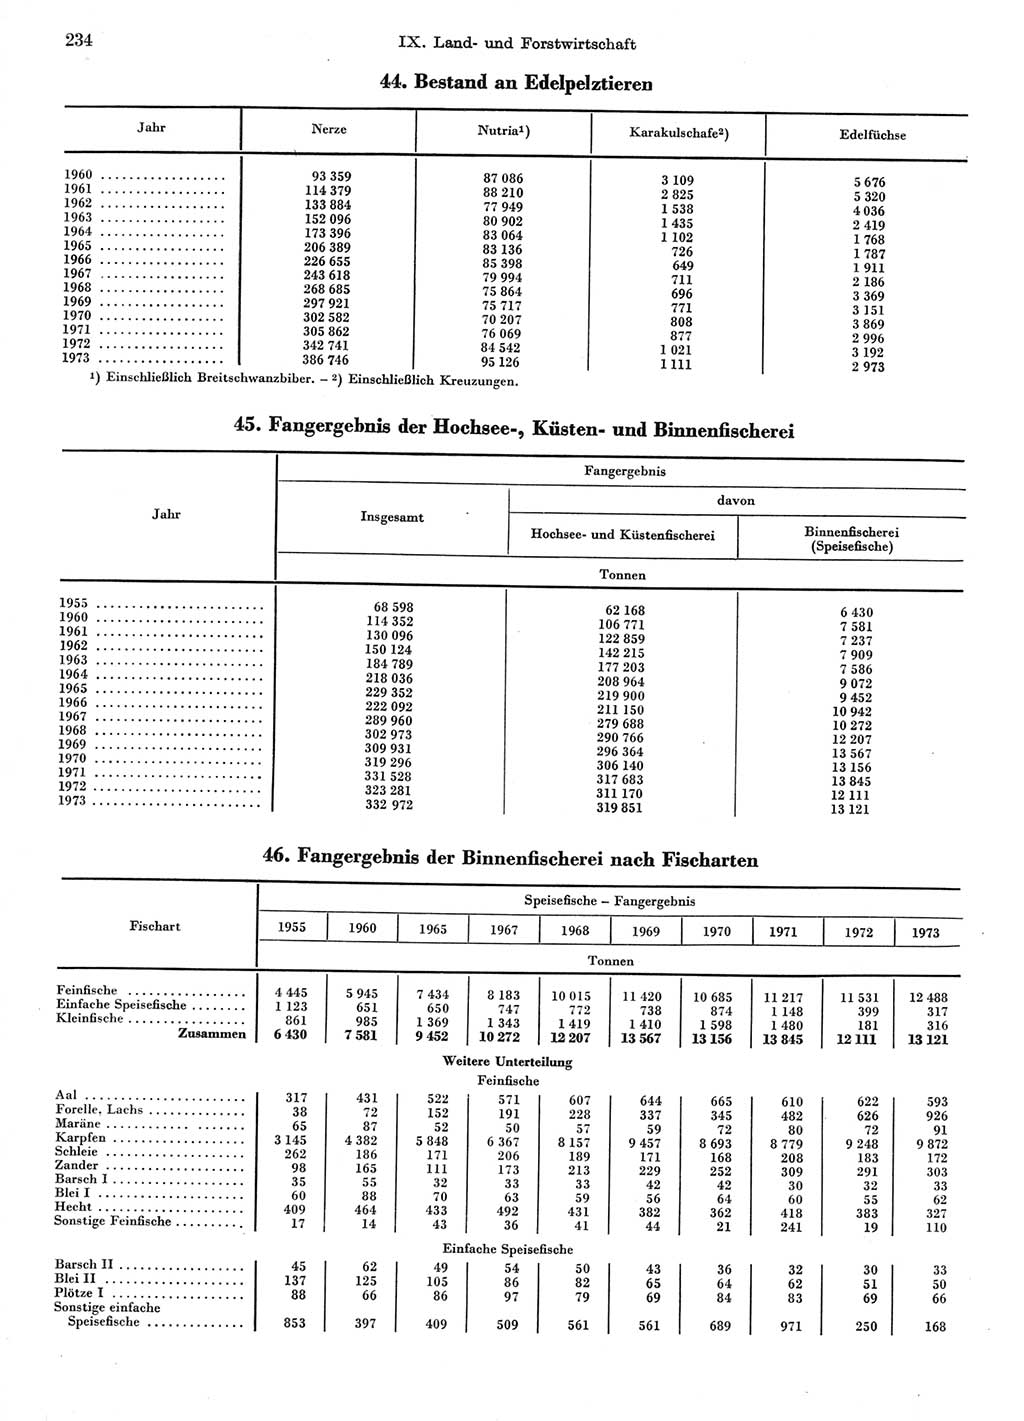 Statistisches Jahrbuch der Deutschen Demokratischen Republik (DDR) 1974, Seite 234 (Stat. Jb. DDR 1974, S. 234)